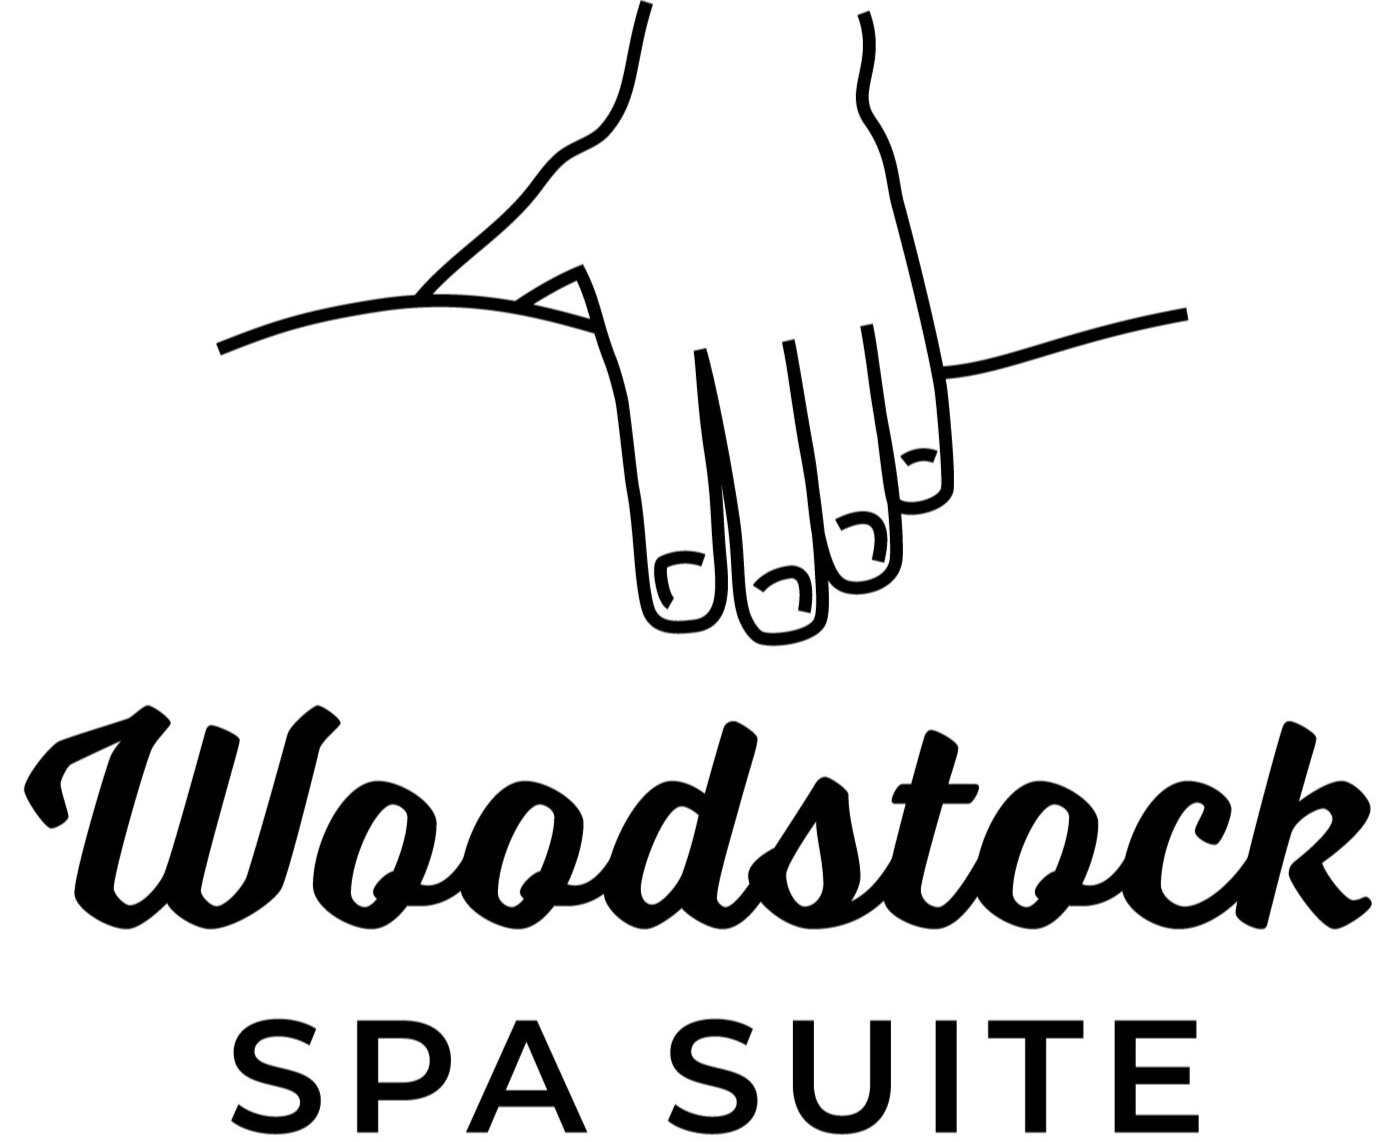 Woodstock Spa Suite